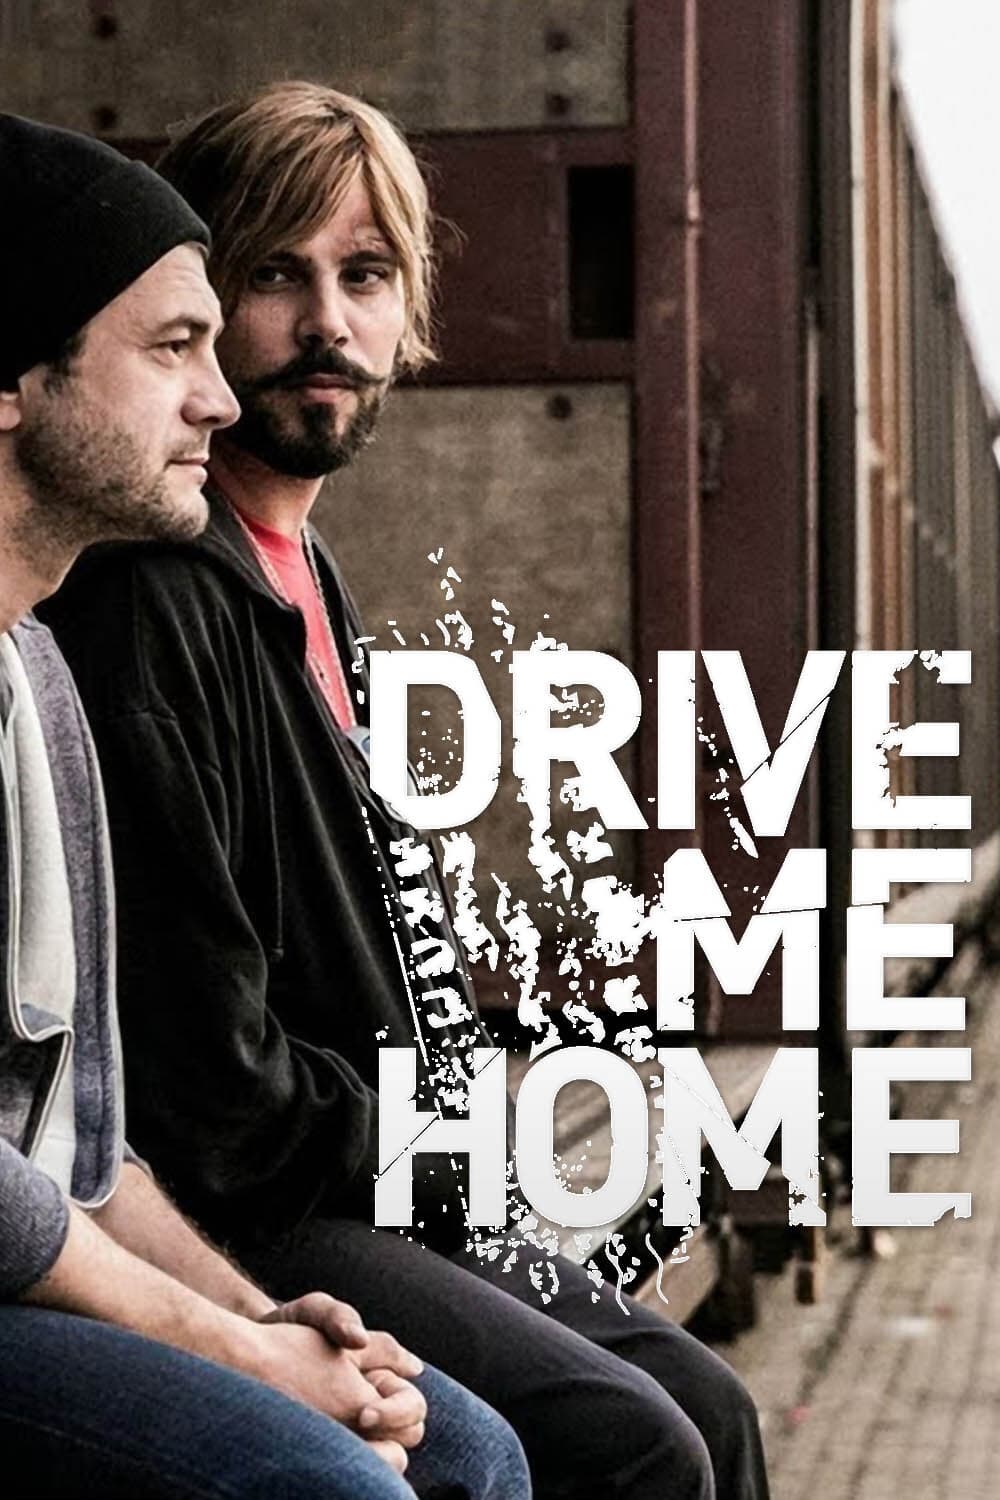 Drive Me Home (2019)